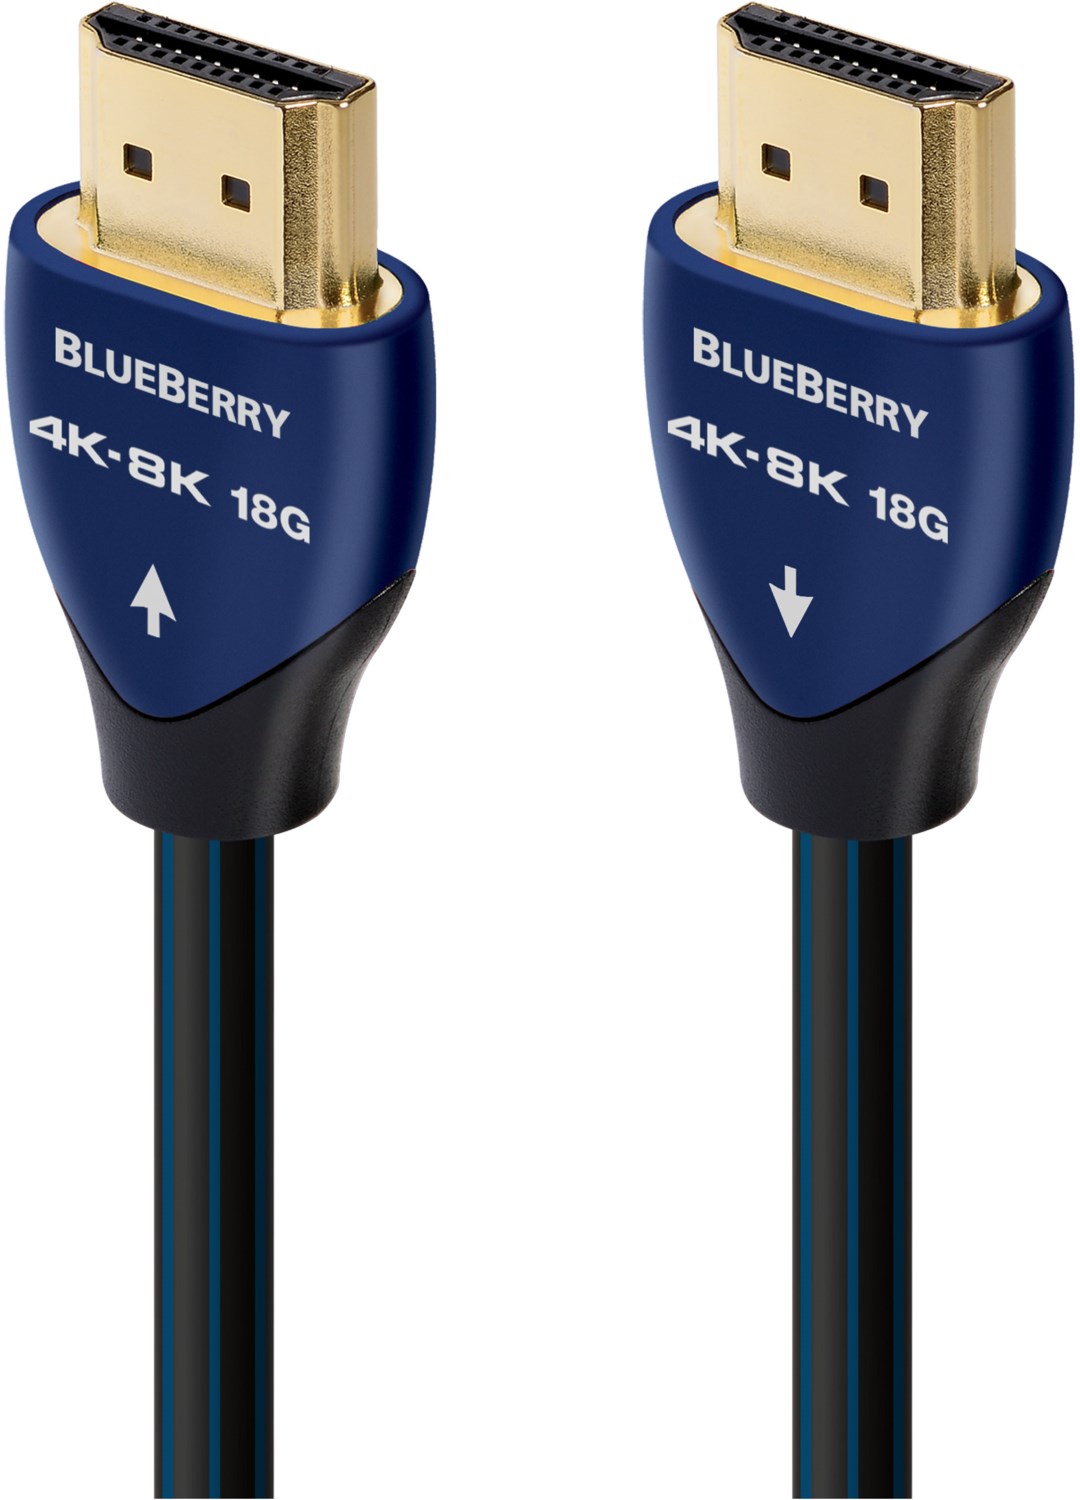 Blueberry HDMI Kabel (3m) von Audioquest